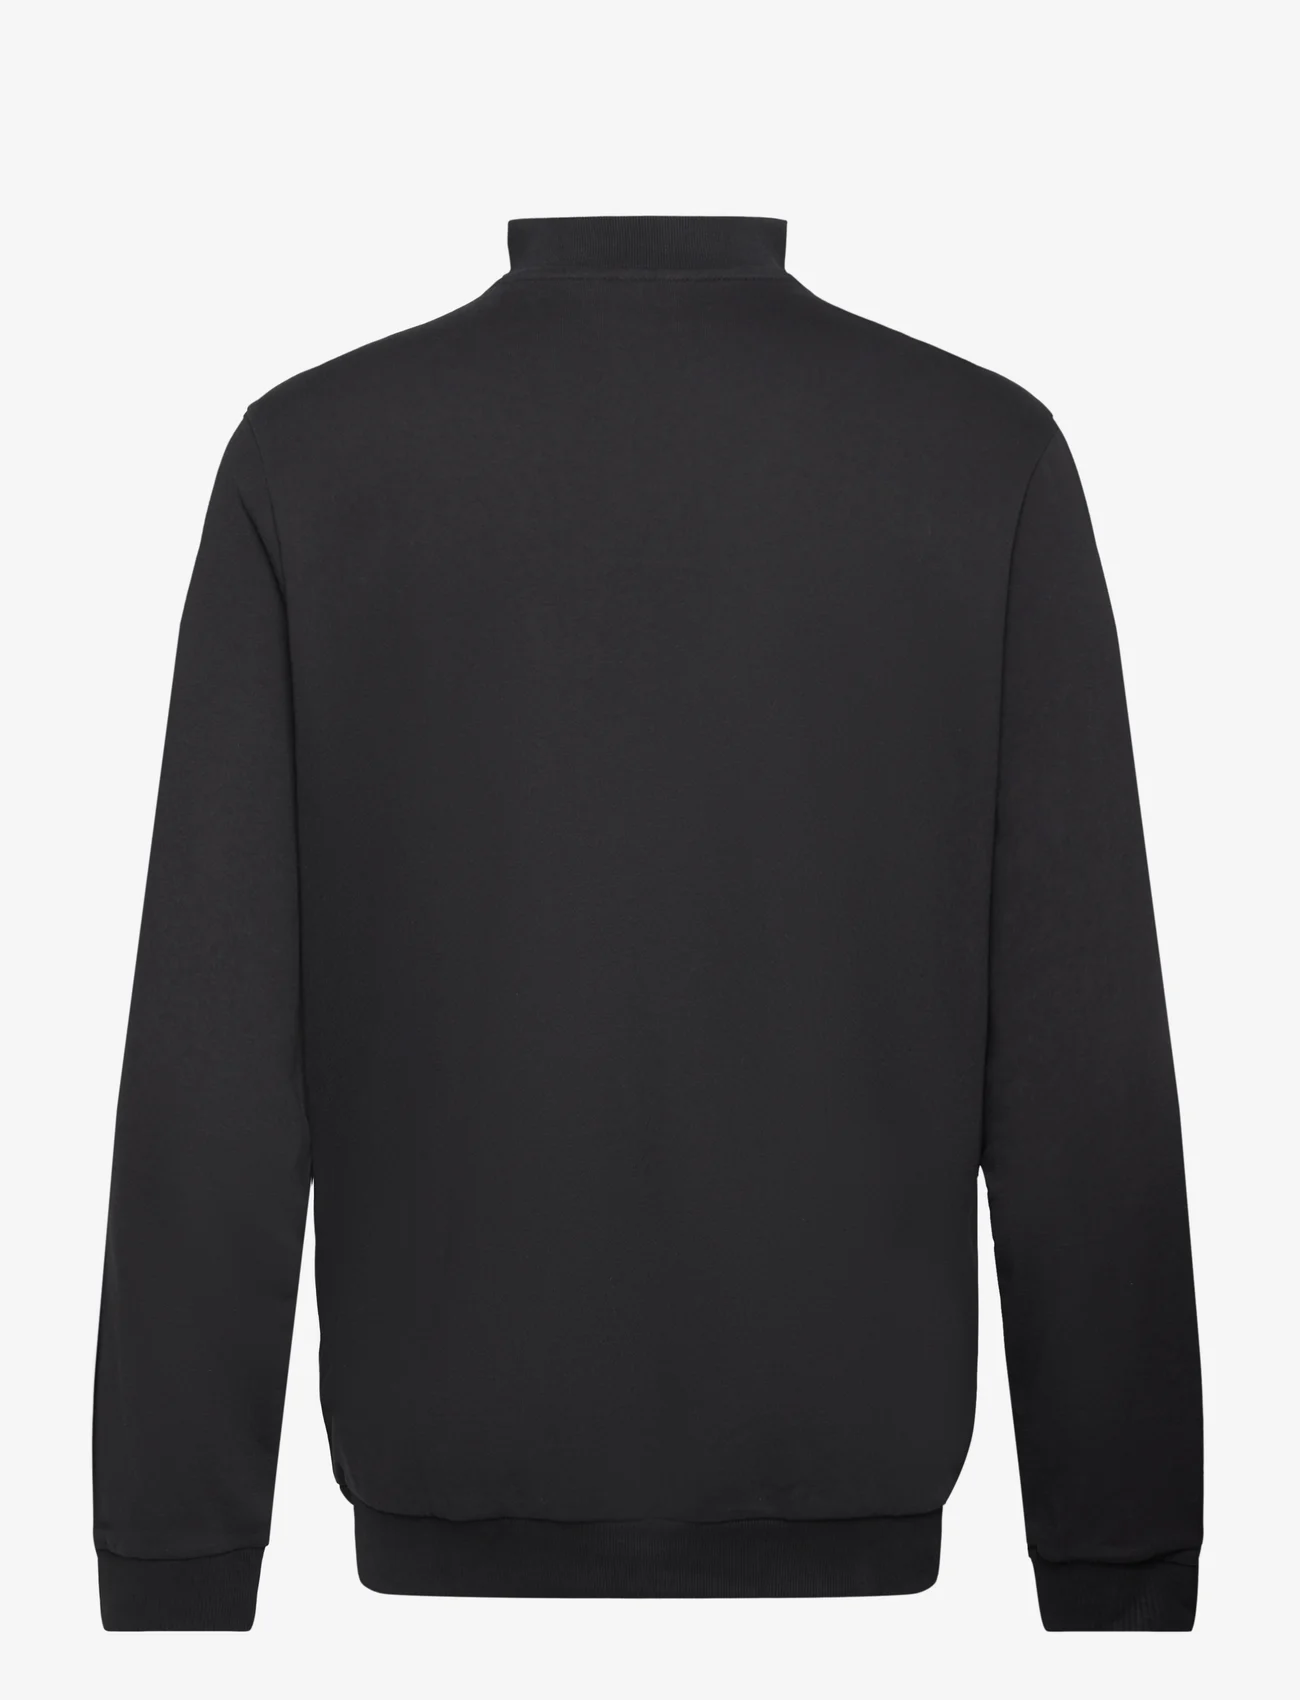 Hummel - hmlLGC WESLEY HALF ZIP SWEATSHIRT - sweatshirts & huvtröjor - black - 1